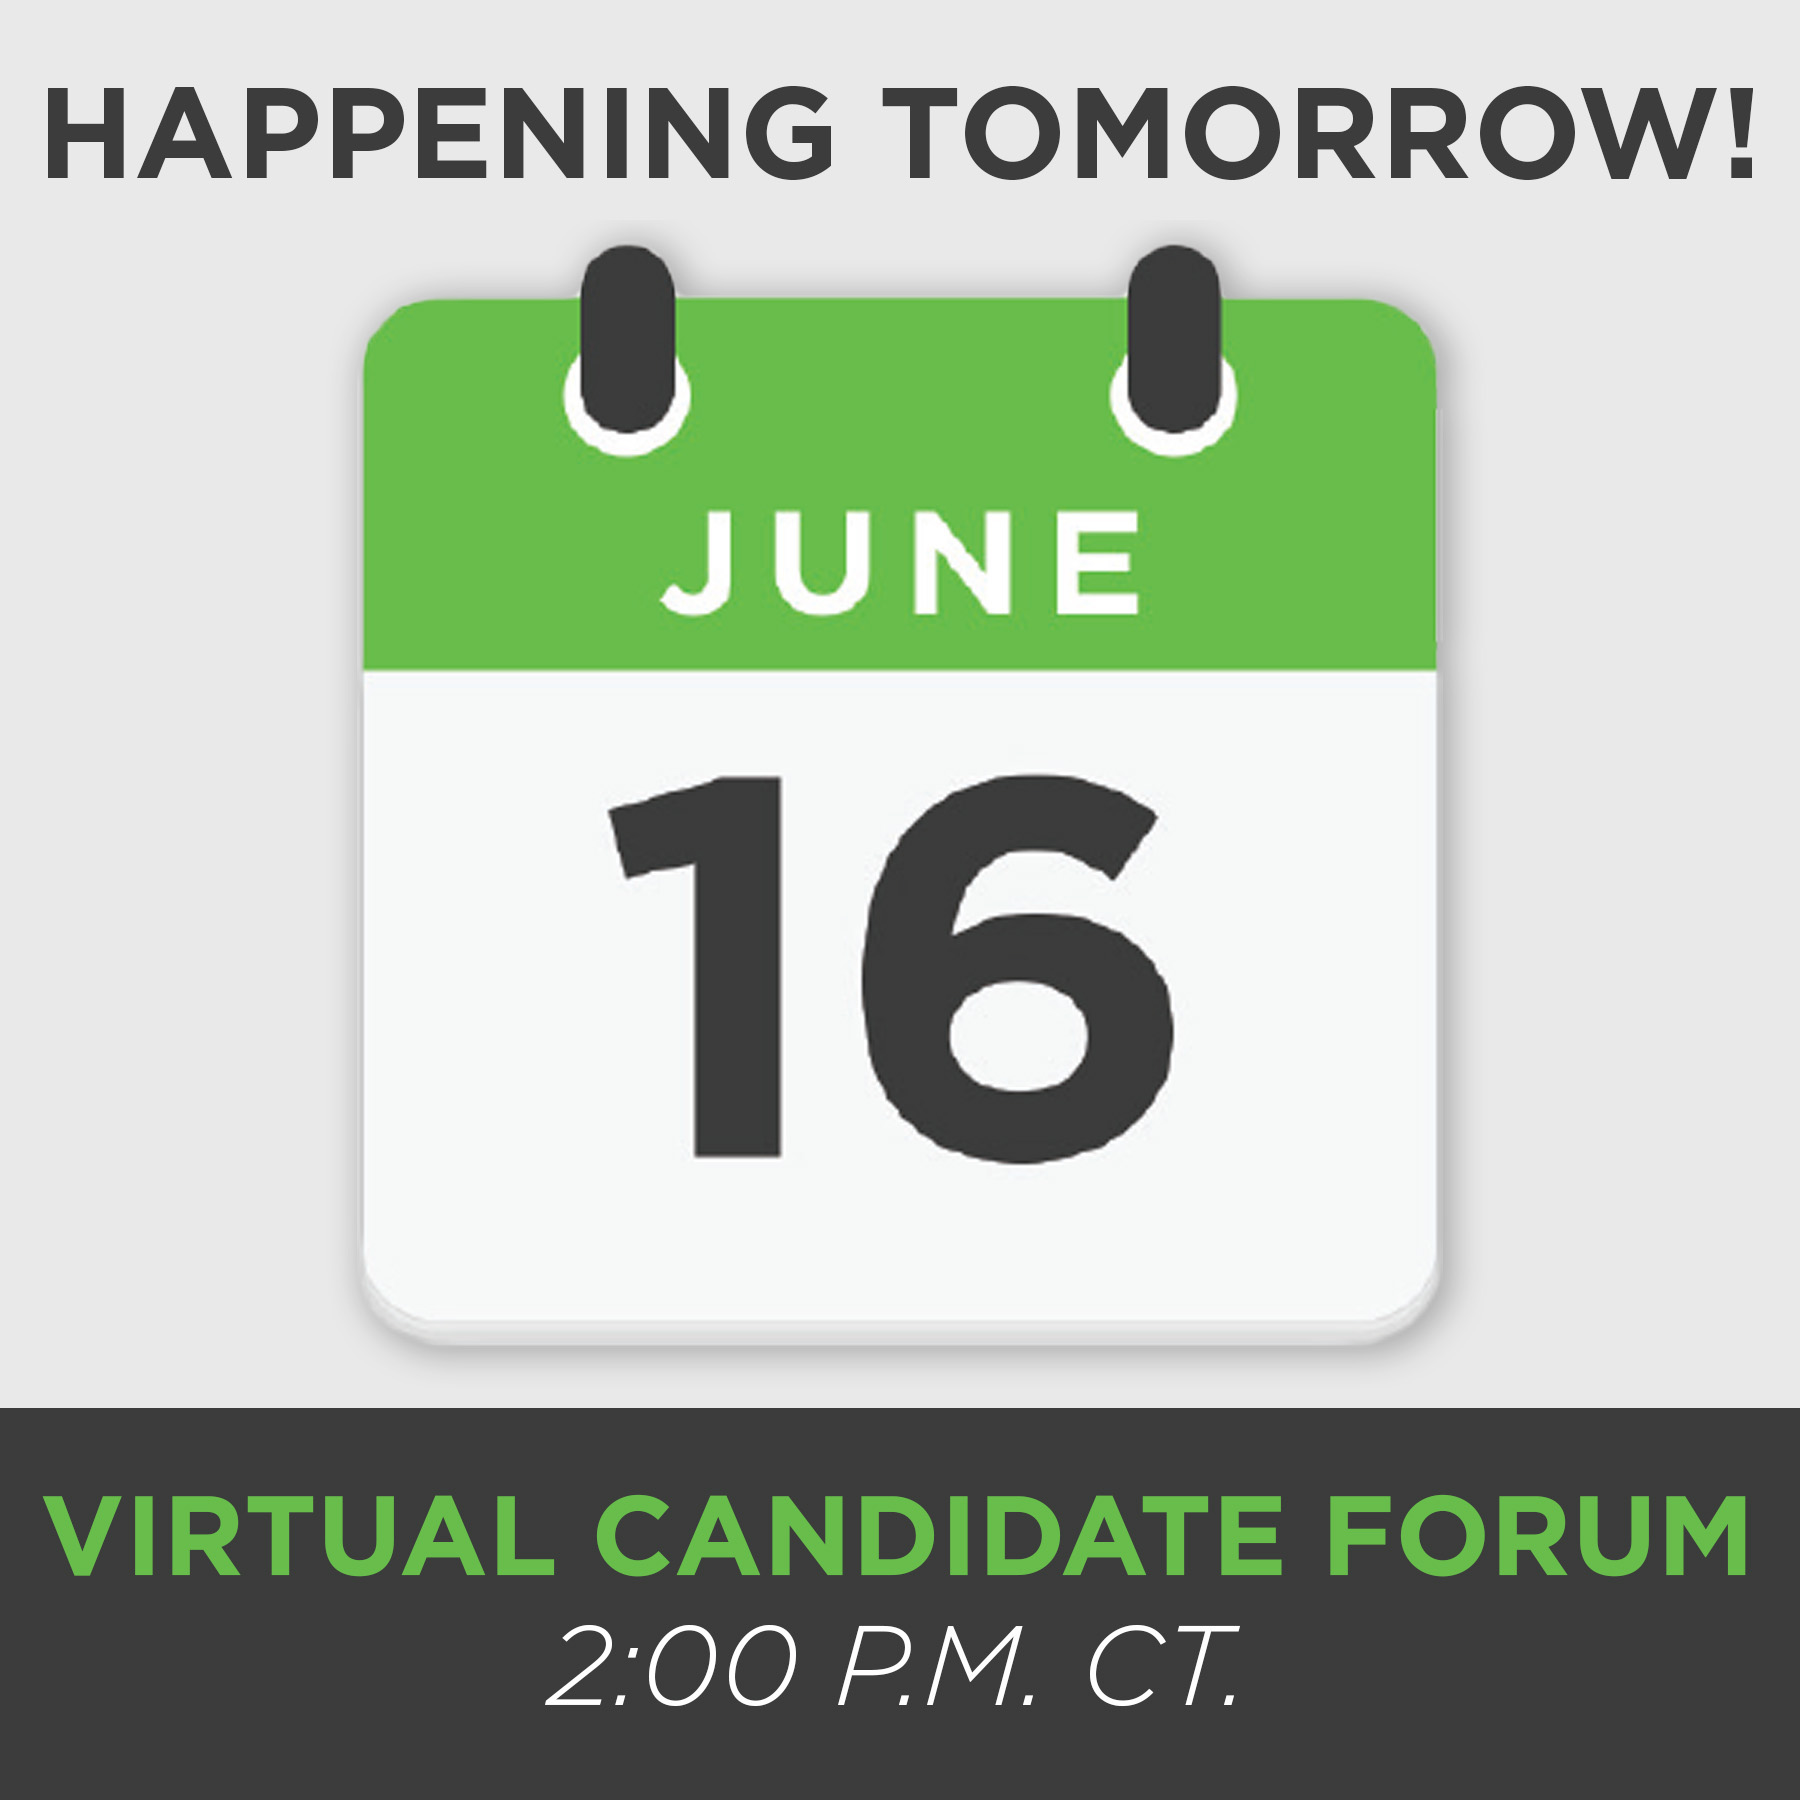 NALA Virtual Candidate Forum